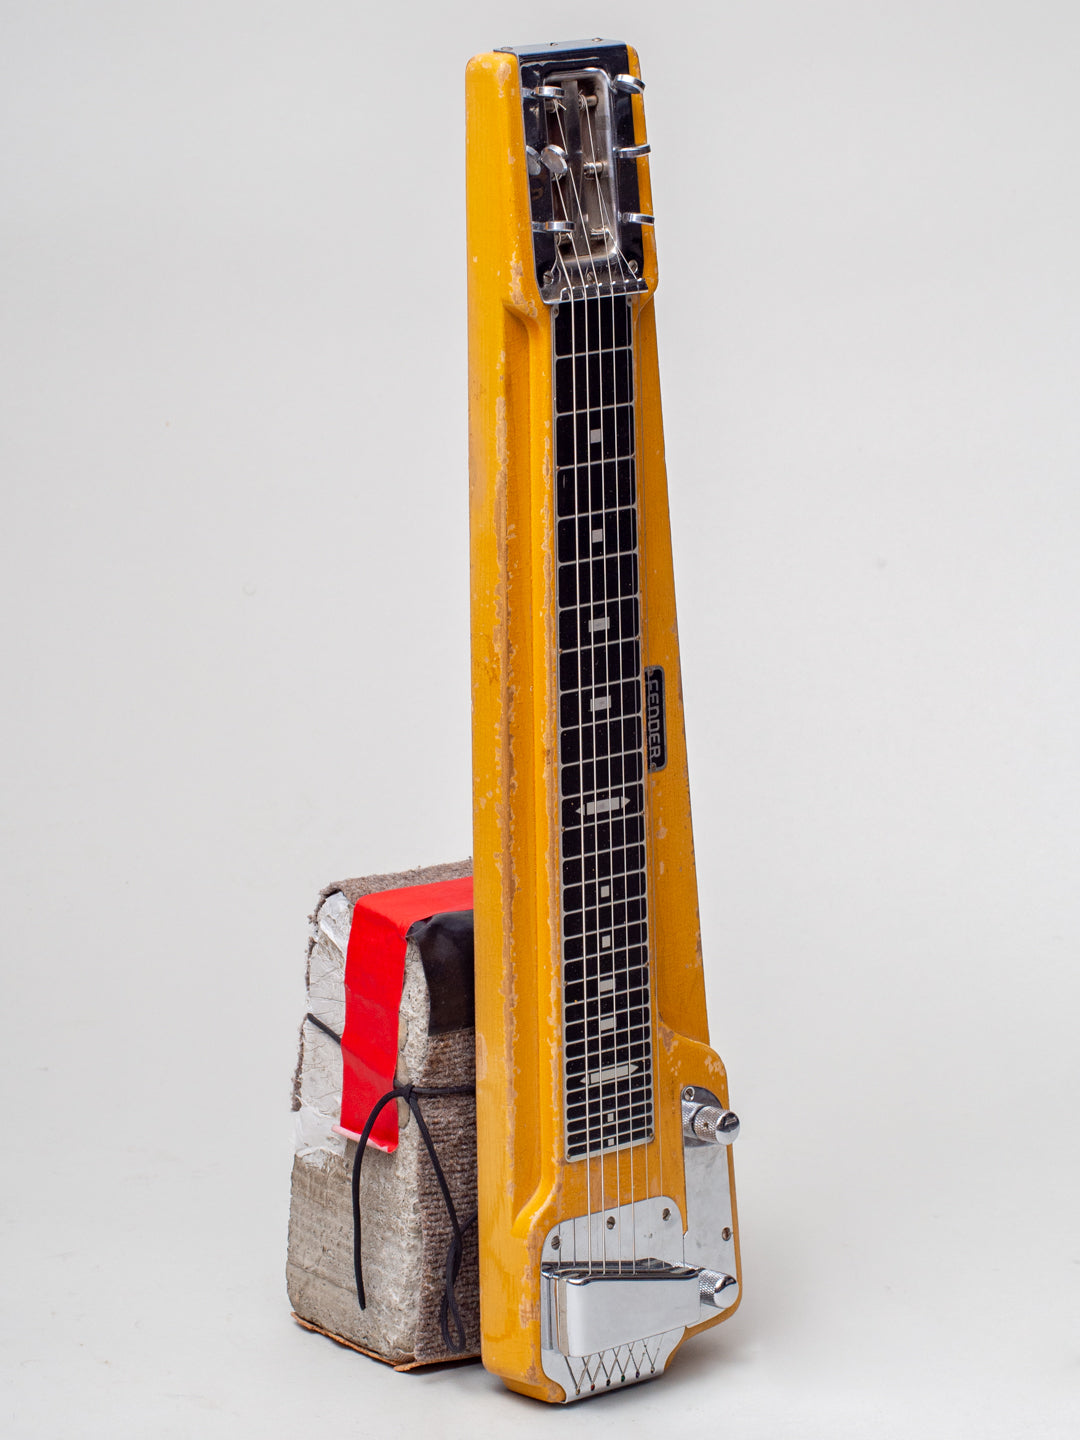 1950 Fender Deluxe 6 Lap Steel